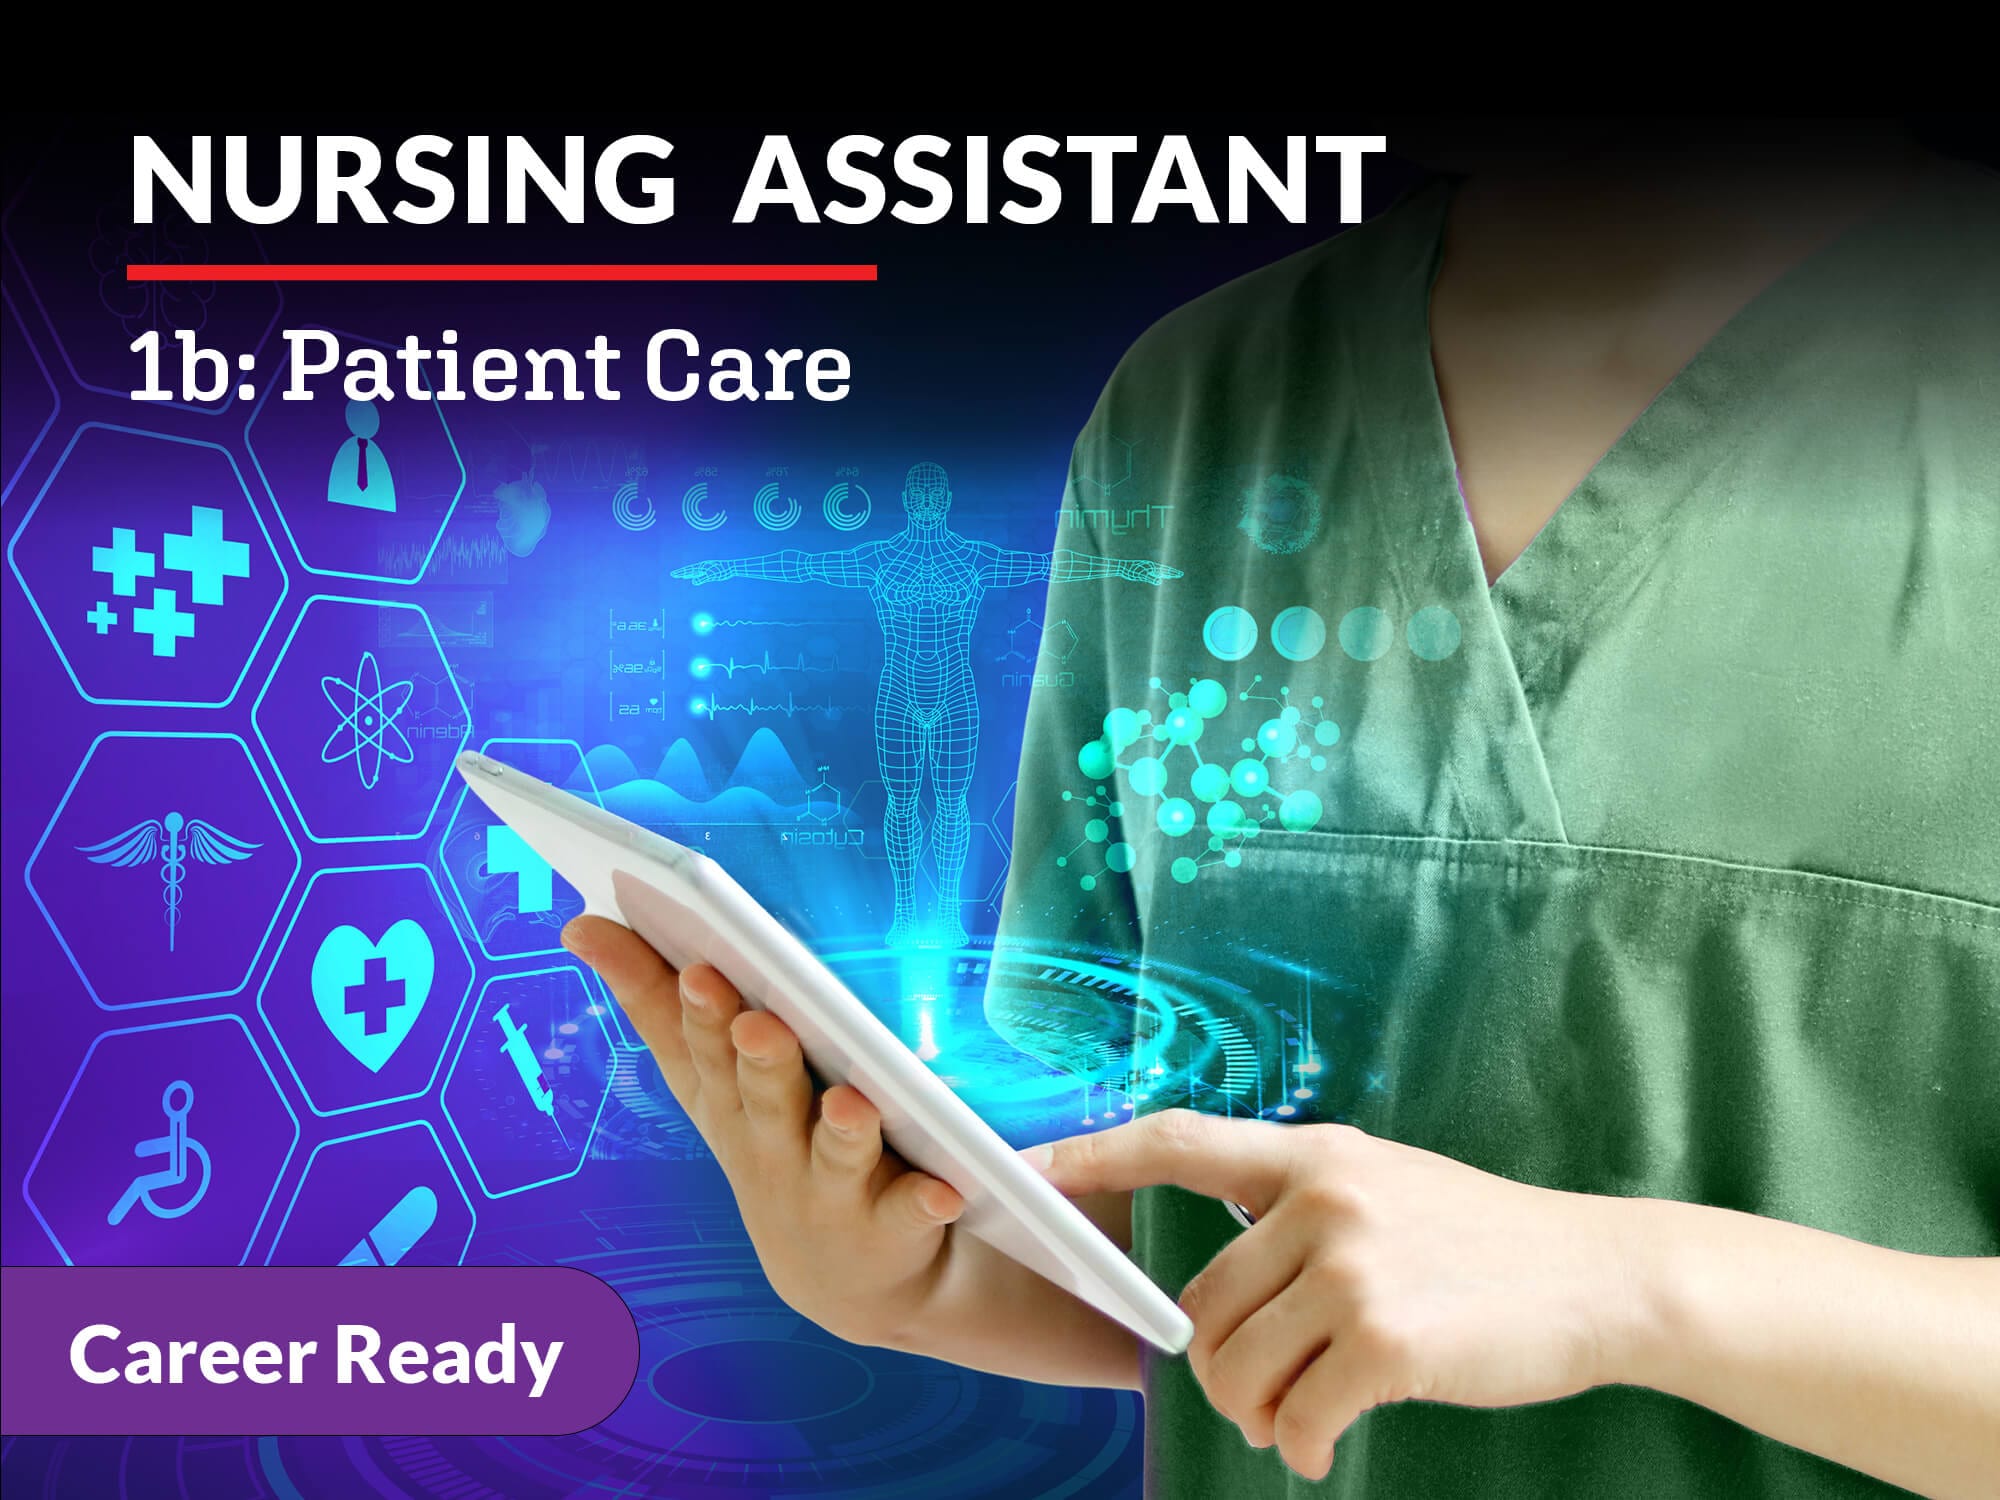 Course: Nursing Assistant 1b: Patient Care